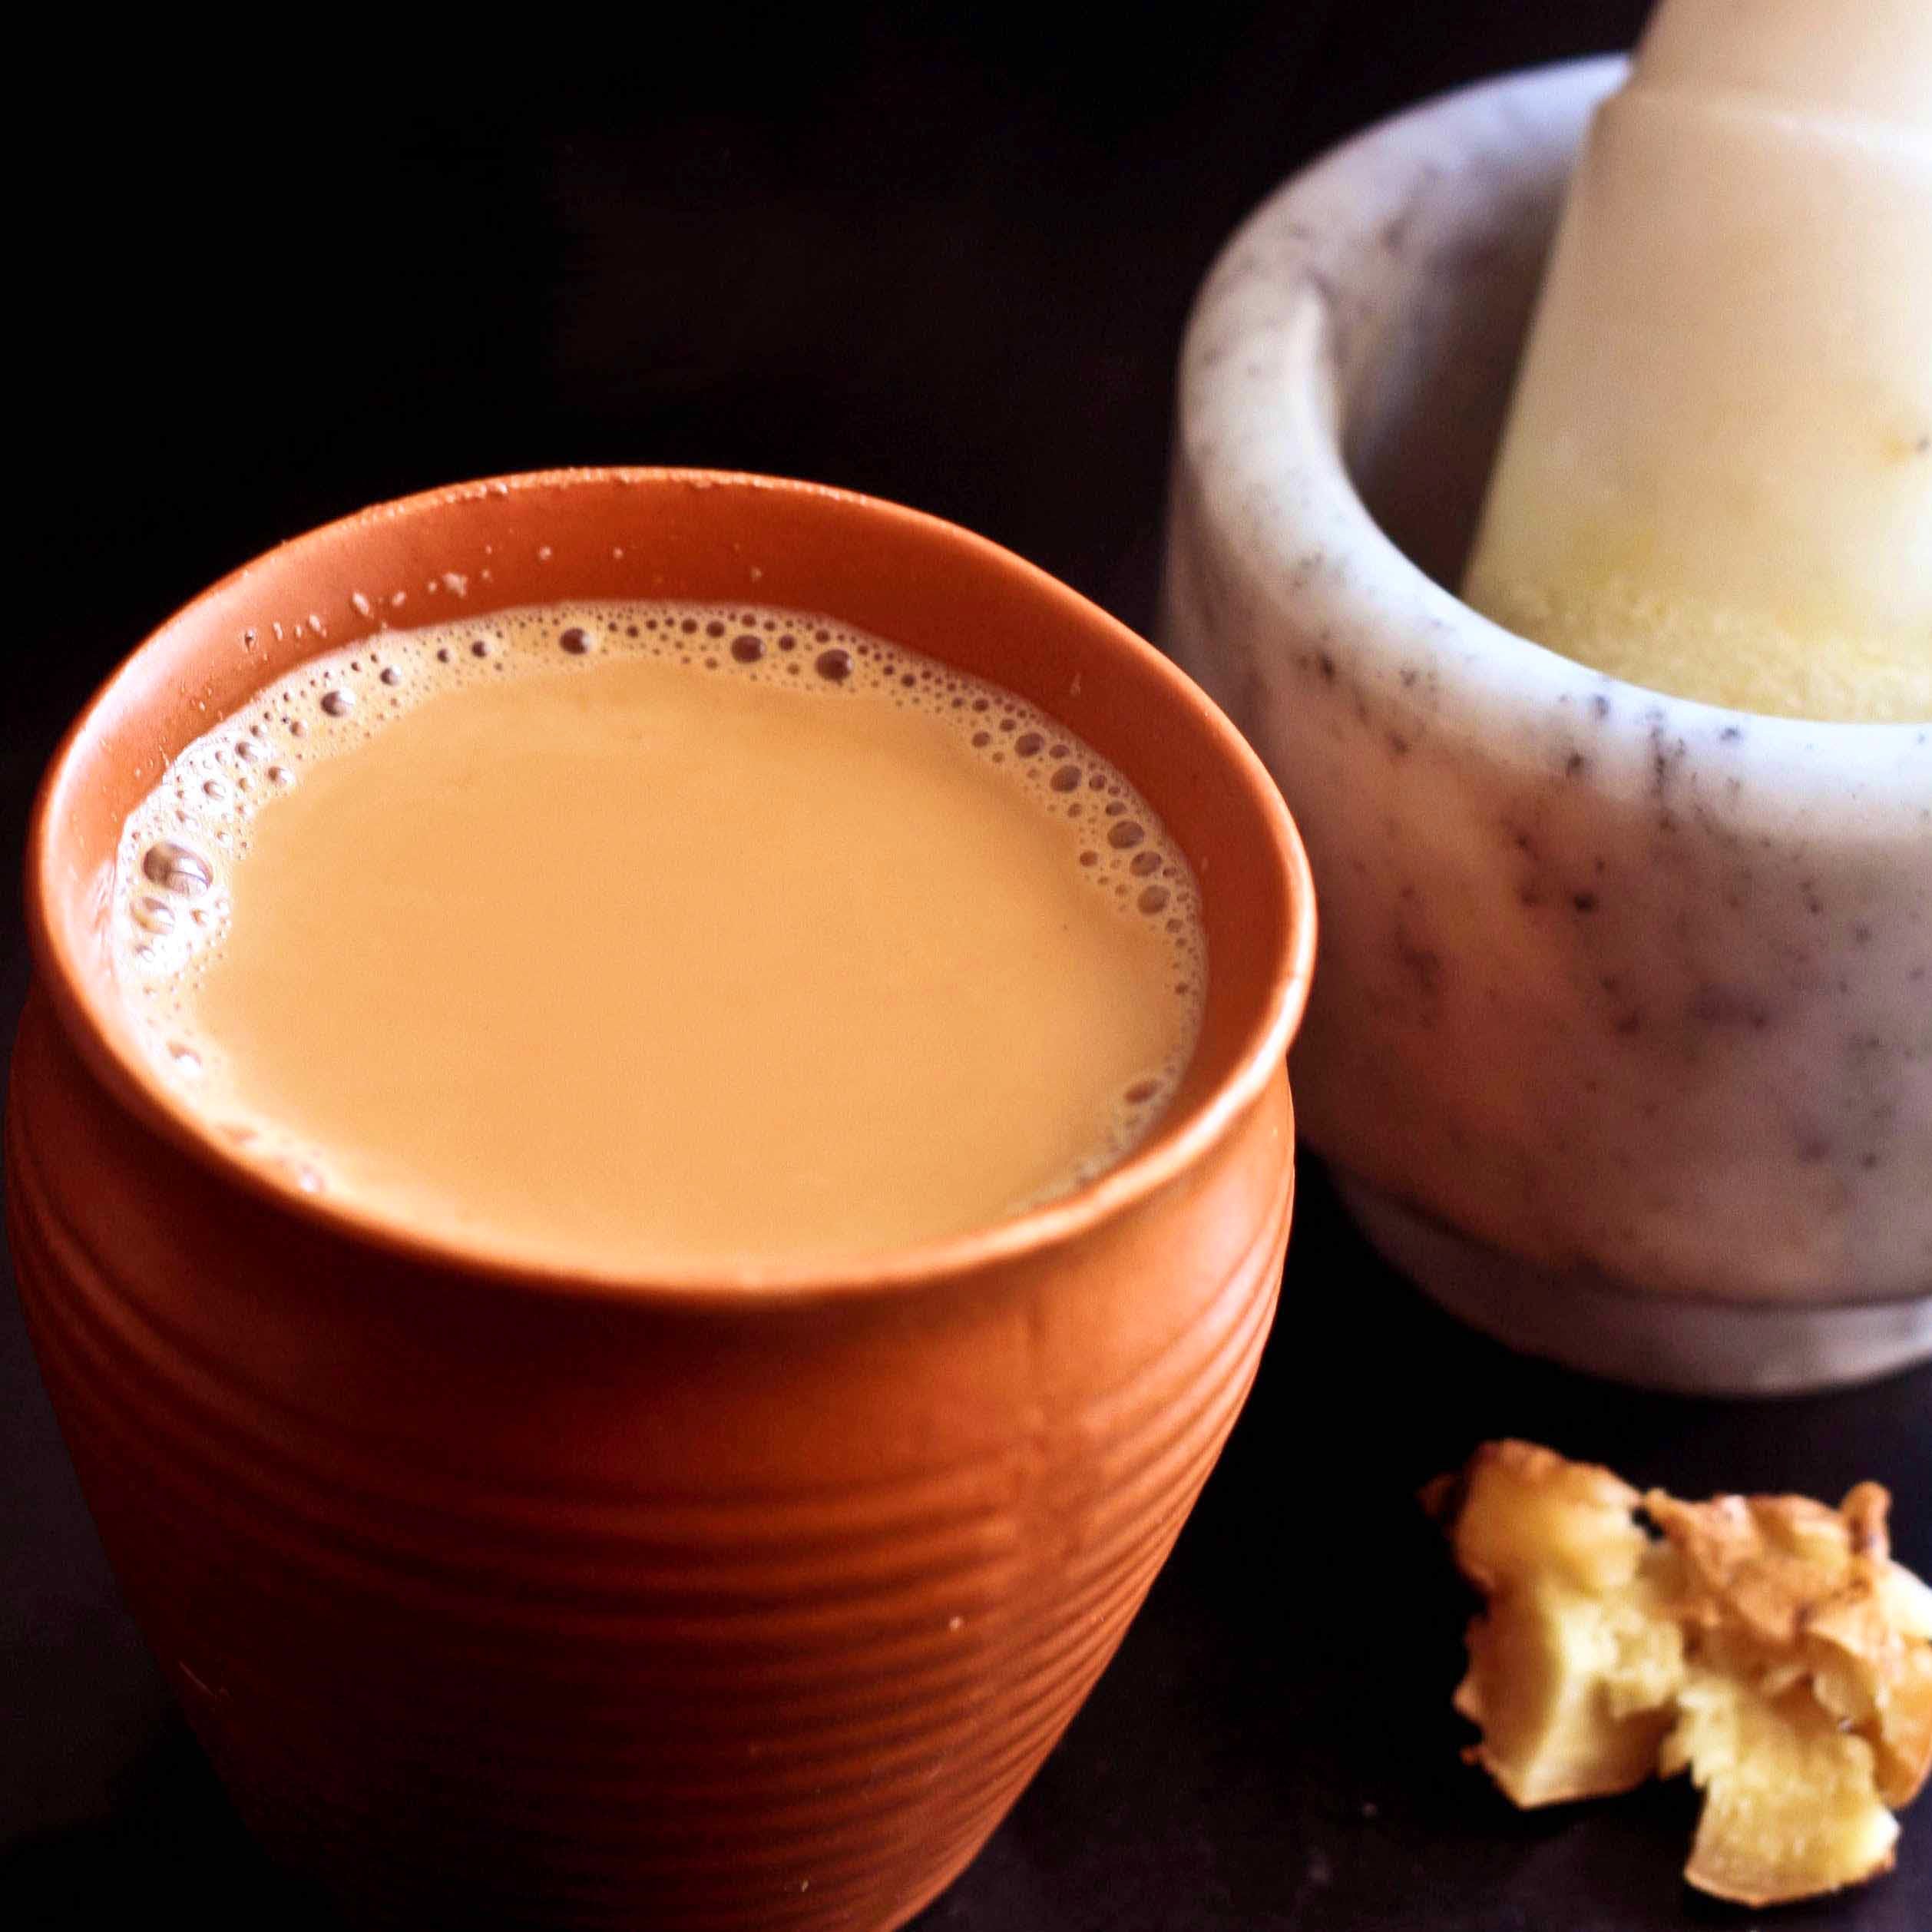 Food,Drink,Masala chai,Café au lait,Ingredient,Hong kong-style milk tea,Cuisine,Non-alcoholic beverage,Horchata,Champurrado